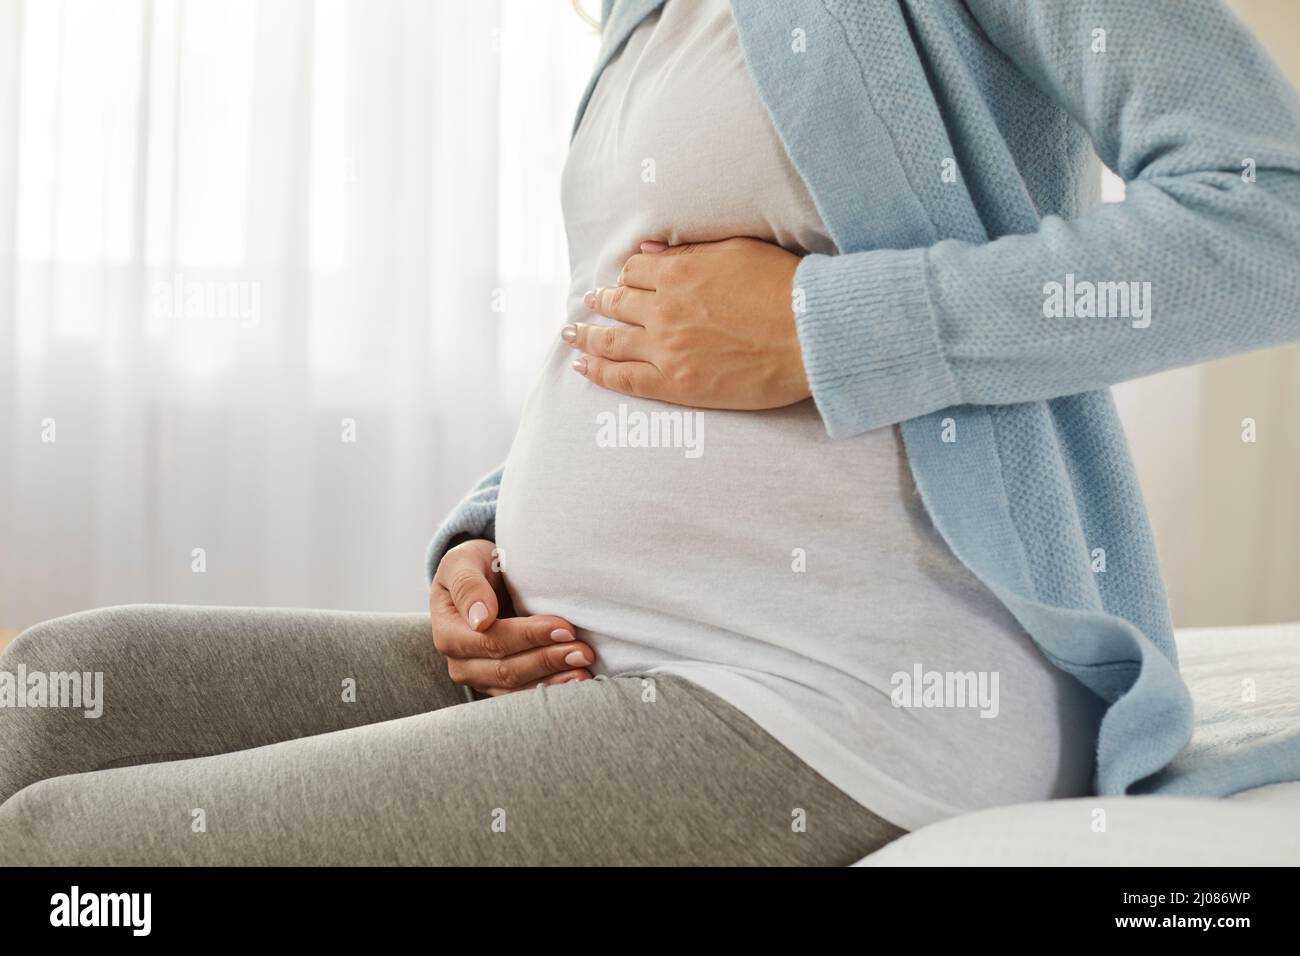 Glückliche junge, schwanger Frau, die auf dem Bett sitzt und ihre Hände auf ihrem Bauch hält Stockfoto